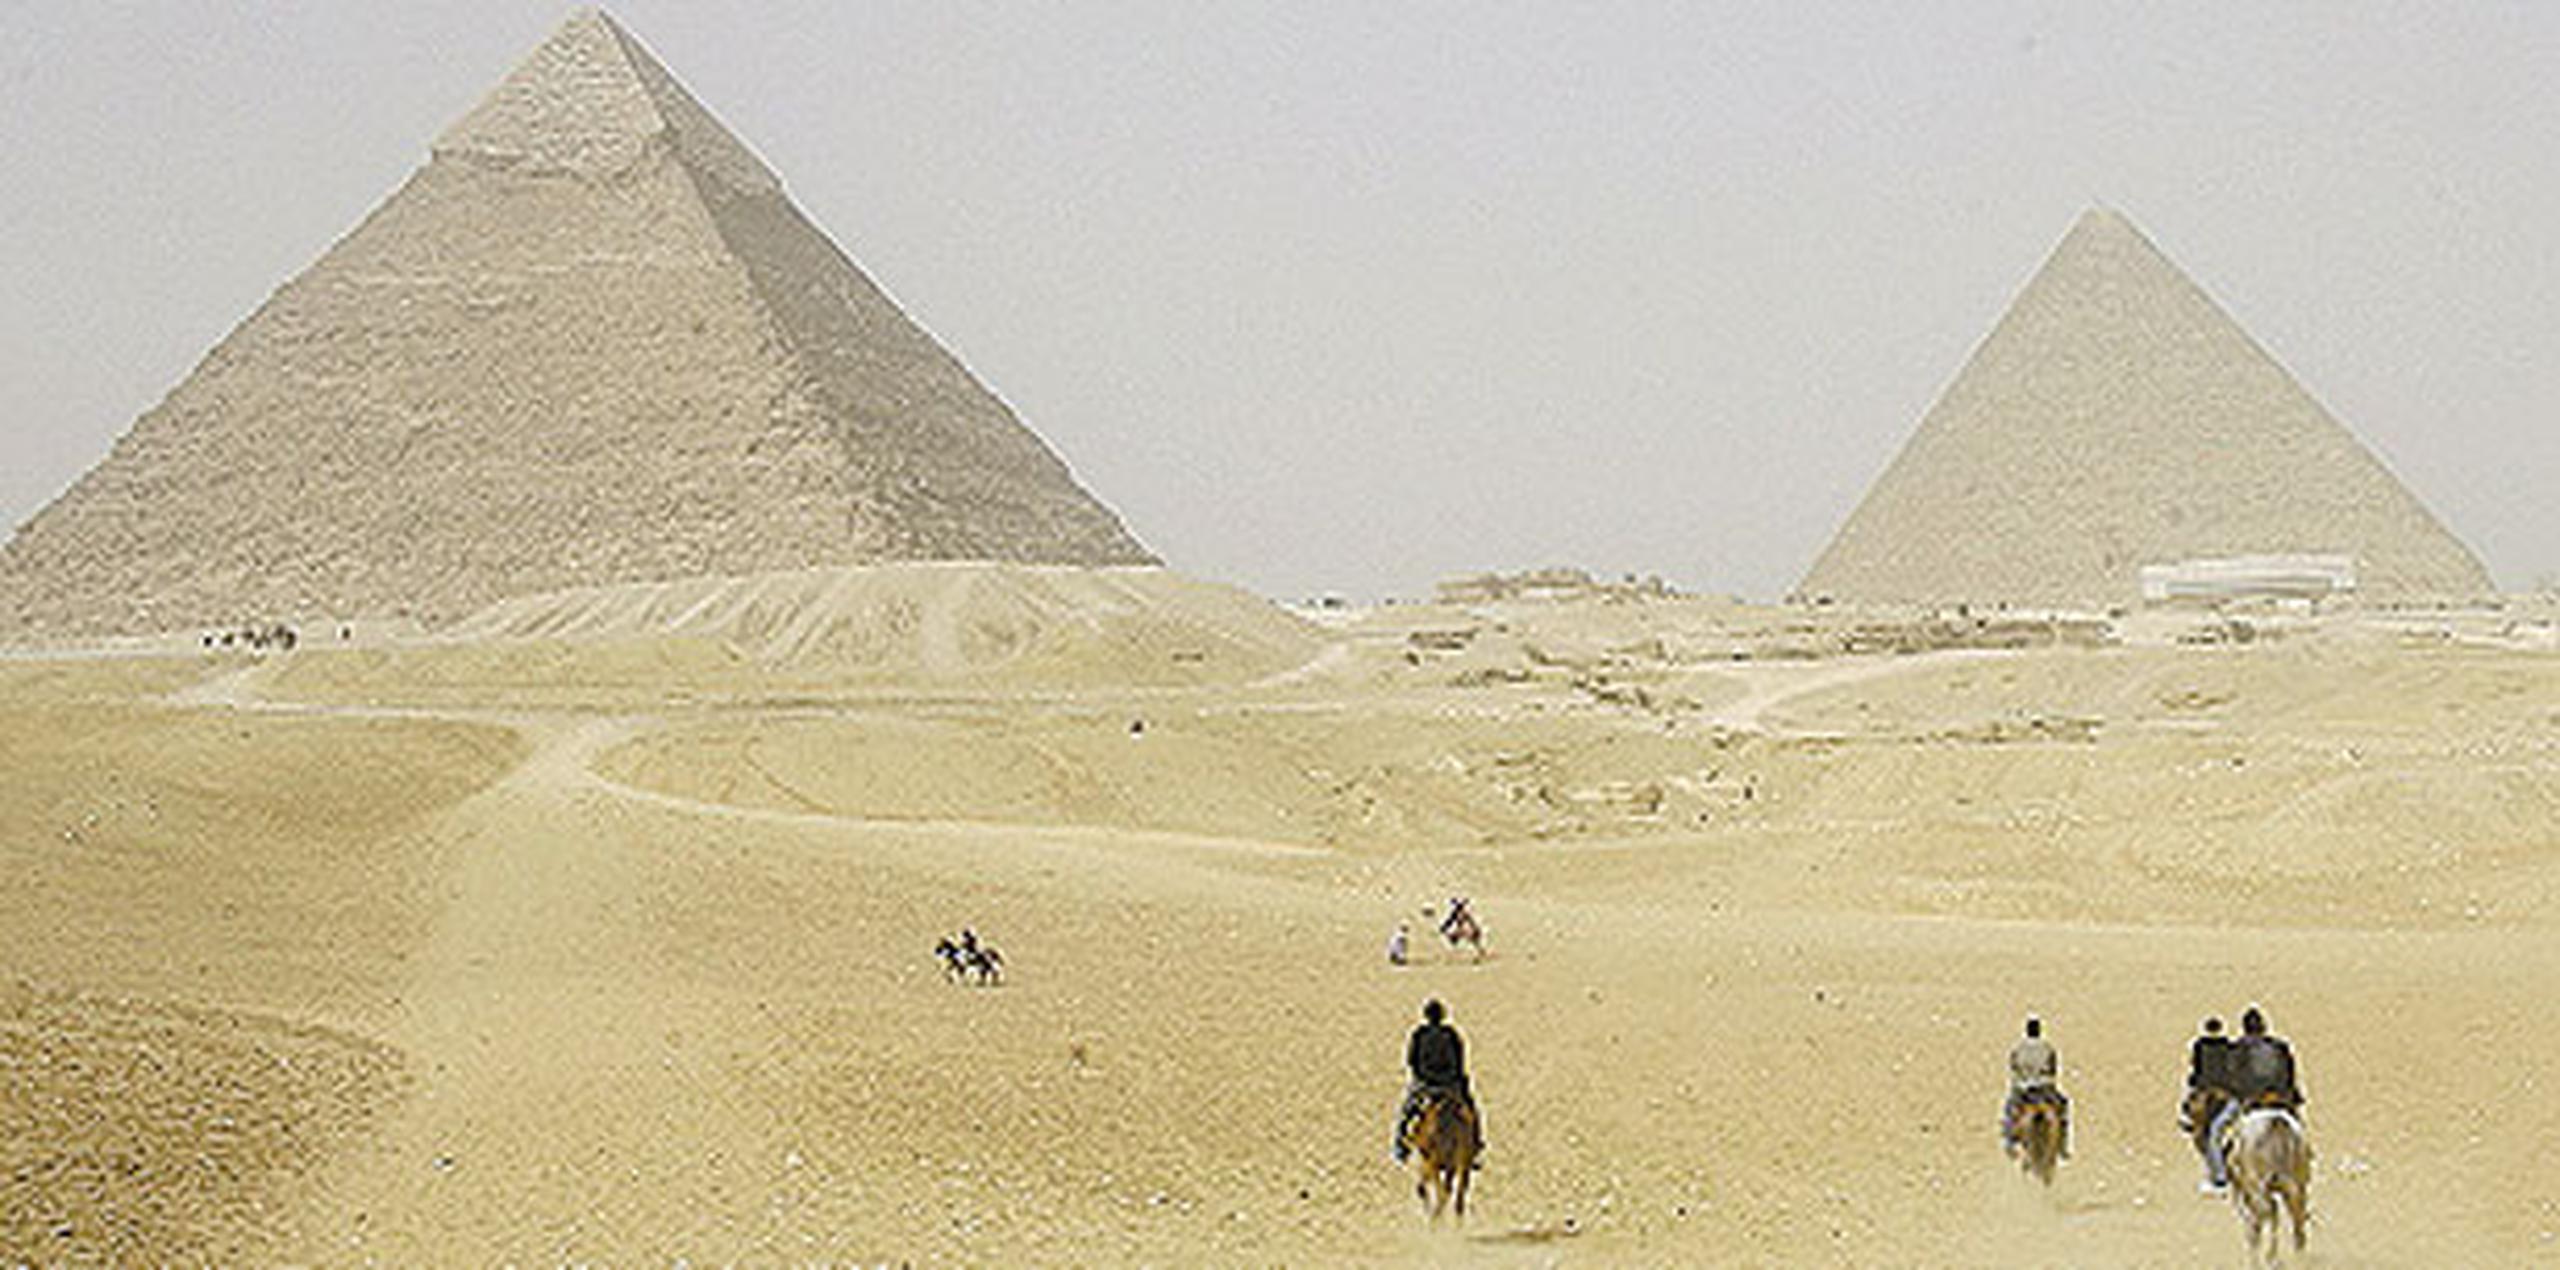 Los ingresos generados por el turismo en Egipto, que en 2014 ascendieron a 7,300 millones de dólares, suponen una de las principales fuentes de divisas en el país, junto con los generados por el tráfico del canal de Suez y las remesas enviadas por los egipcios que viven en el extranjero. (Archivo)